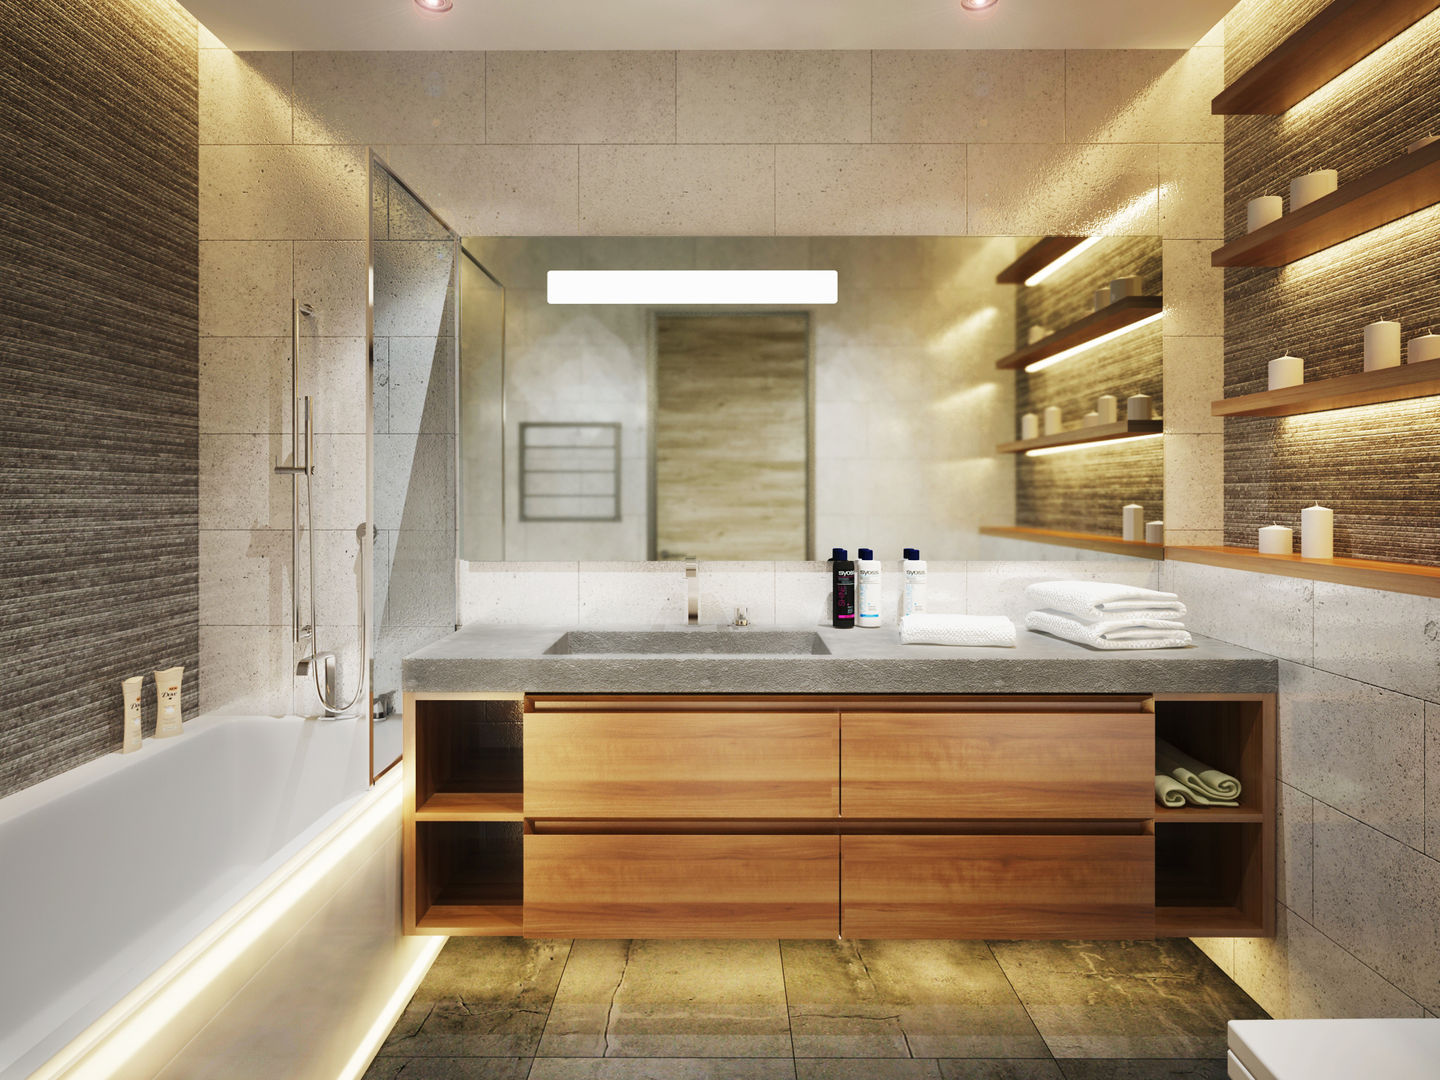 Квартира в современном минимализме, Polovets design studio Polovets design studio Bathroom